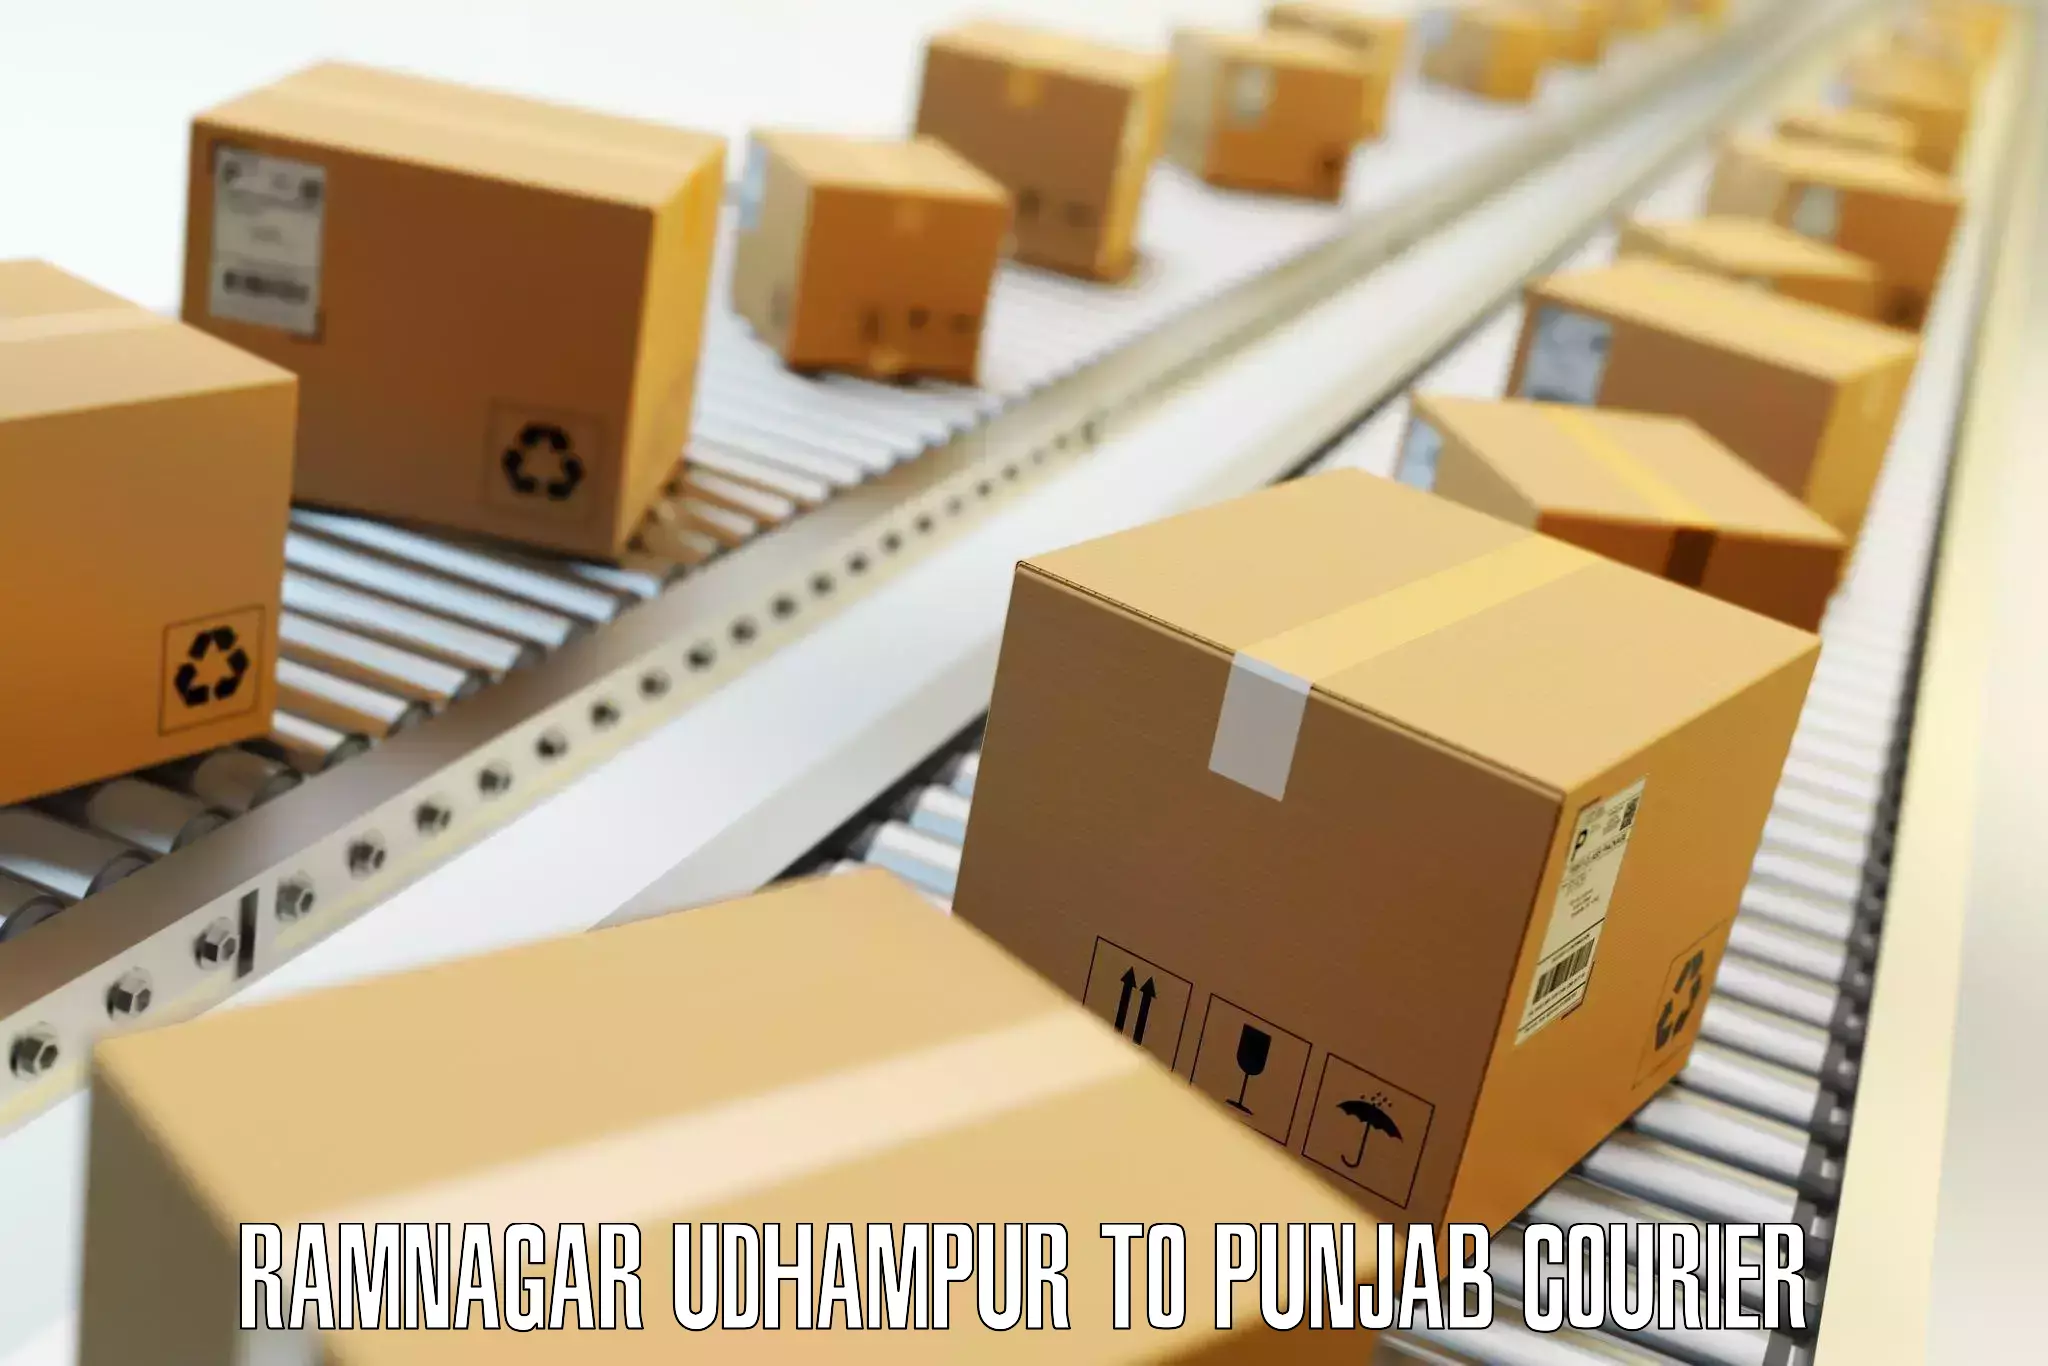 Baggage courier advice Ramnagar Udhampur to Punjab